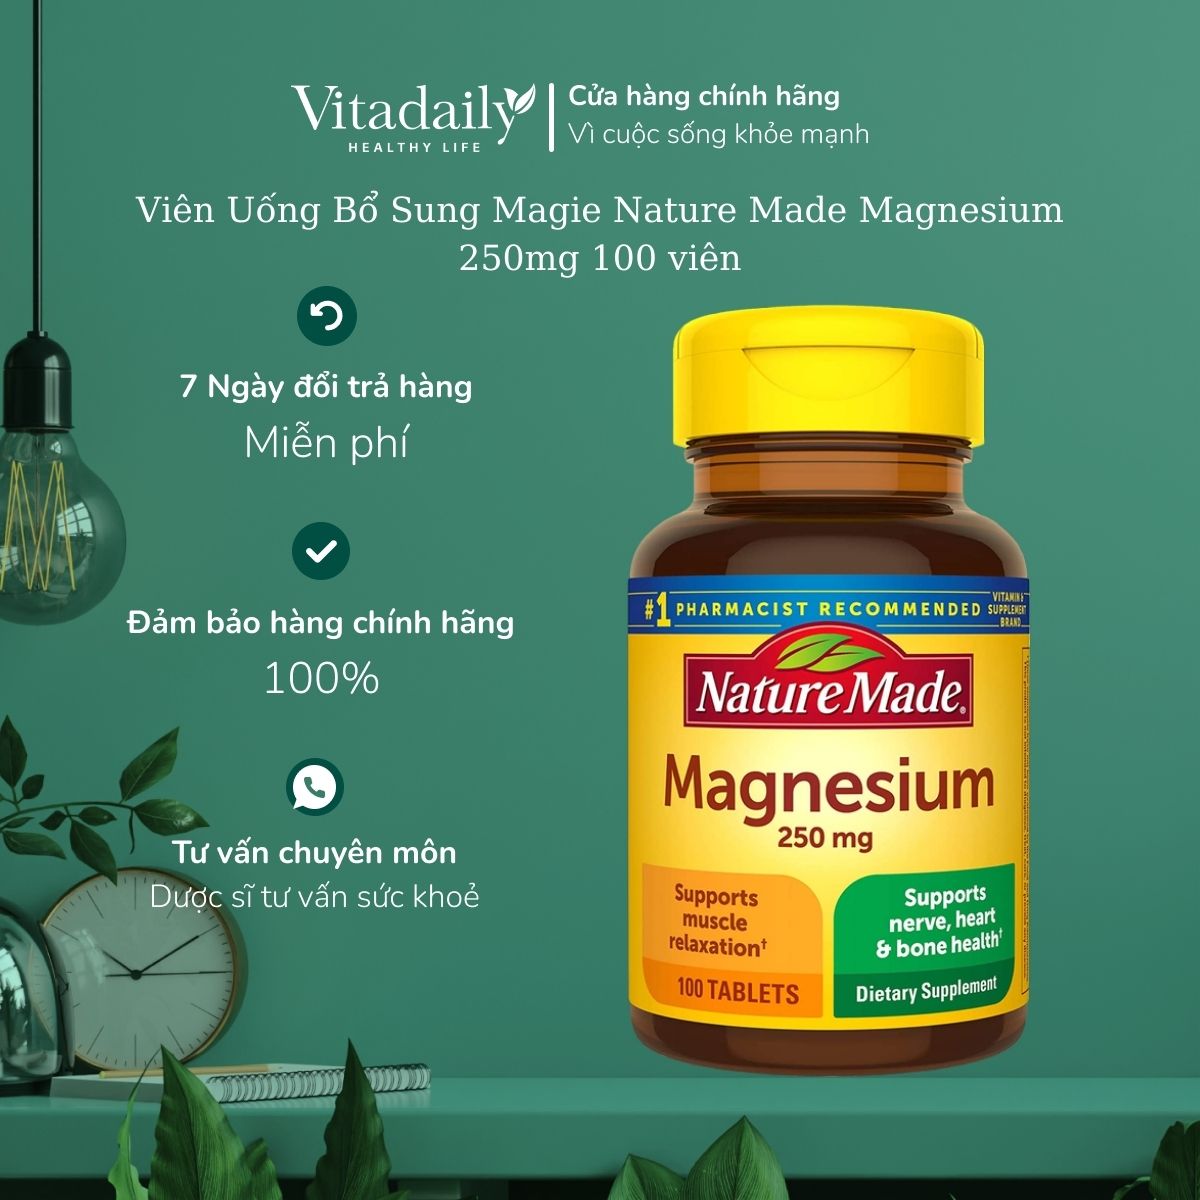 Viên Uống Bổ Sung Magie Nature Made Magnesium 250mg 100 viên